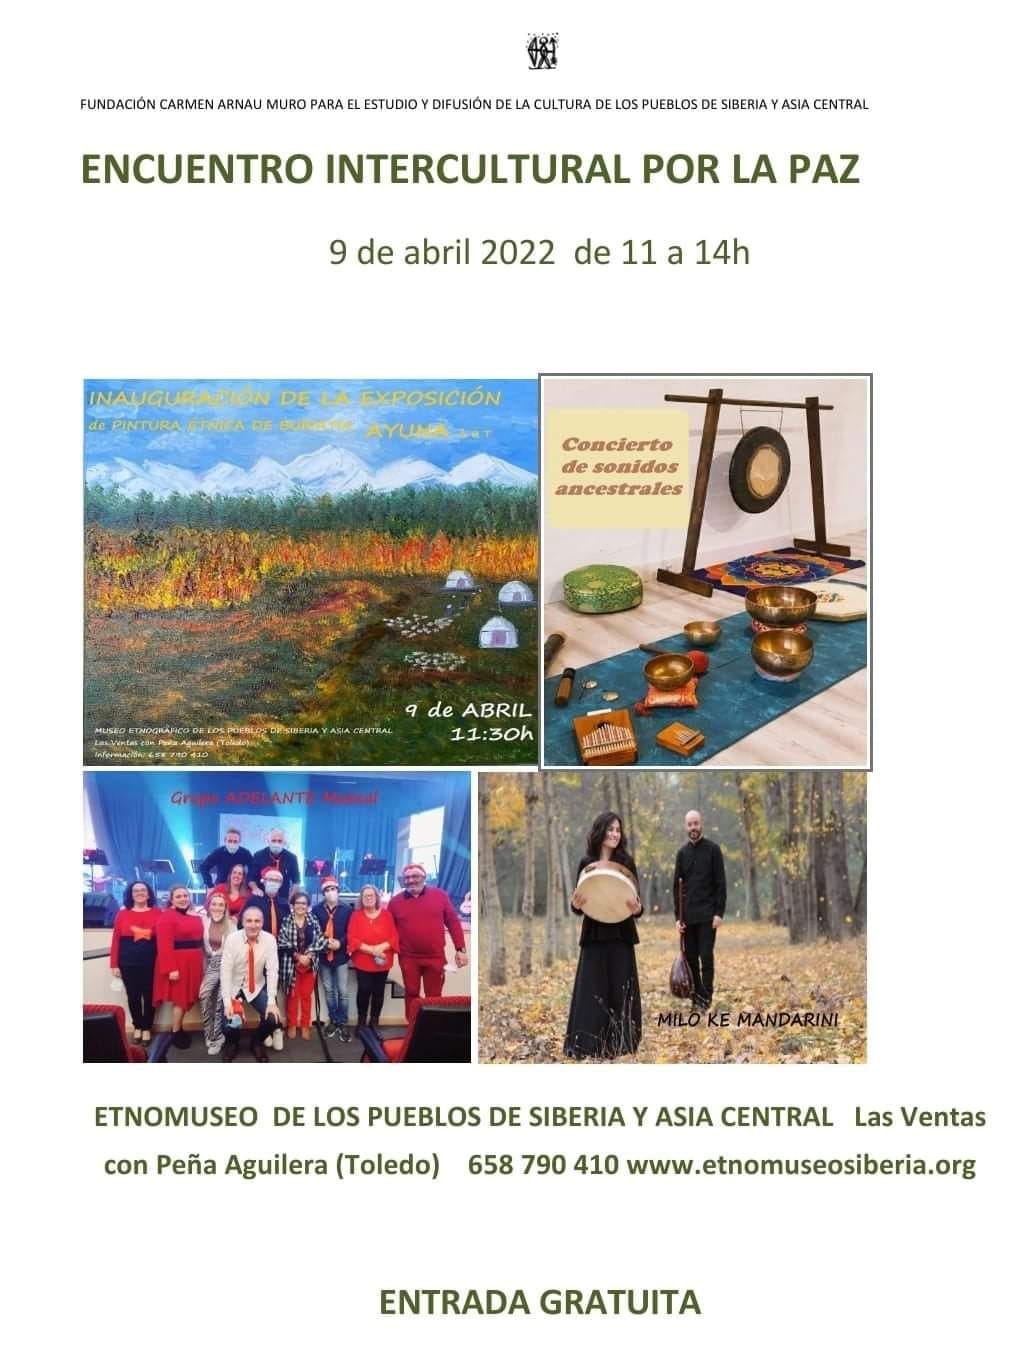 220406 – Actualidad – Etnomuseo – EncIntercultural paz